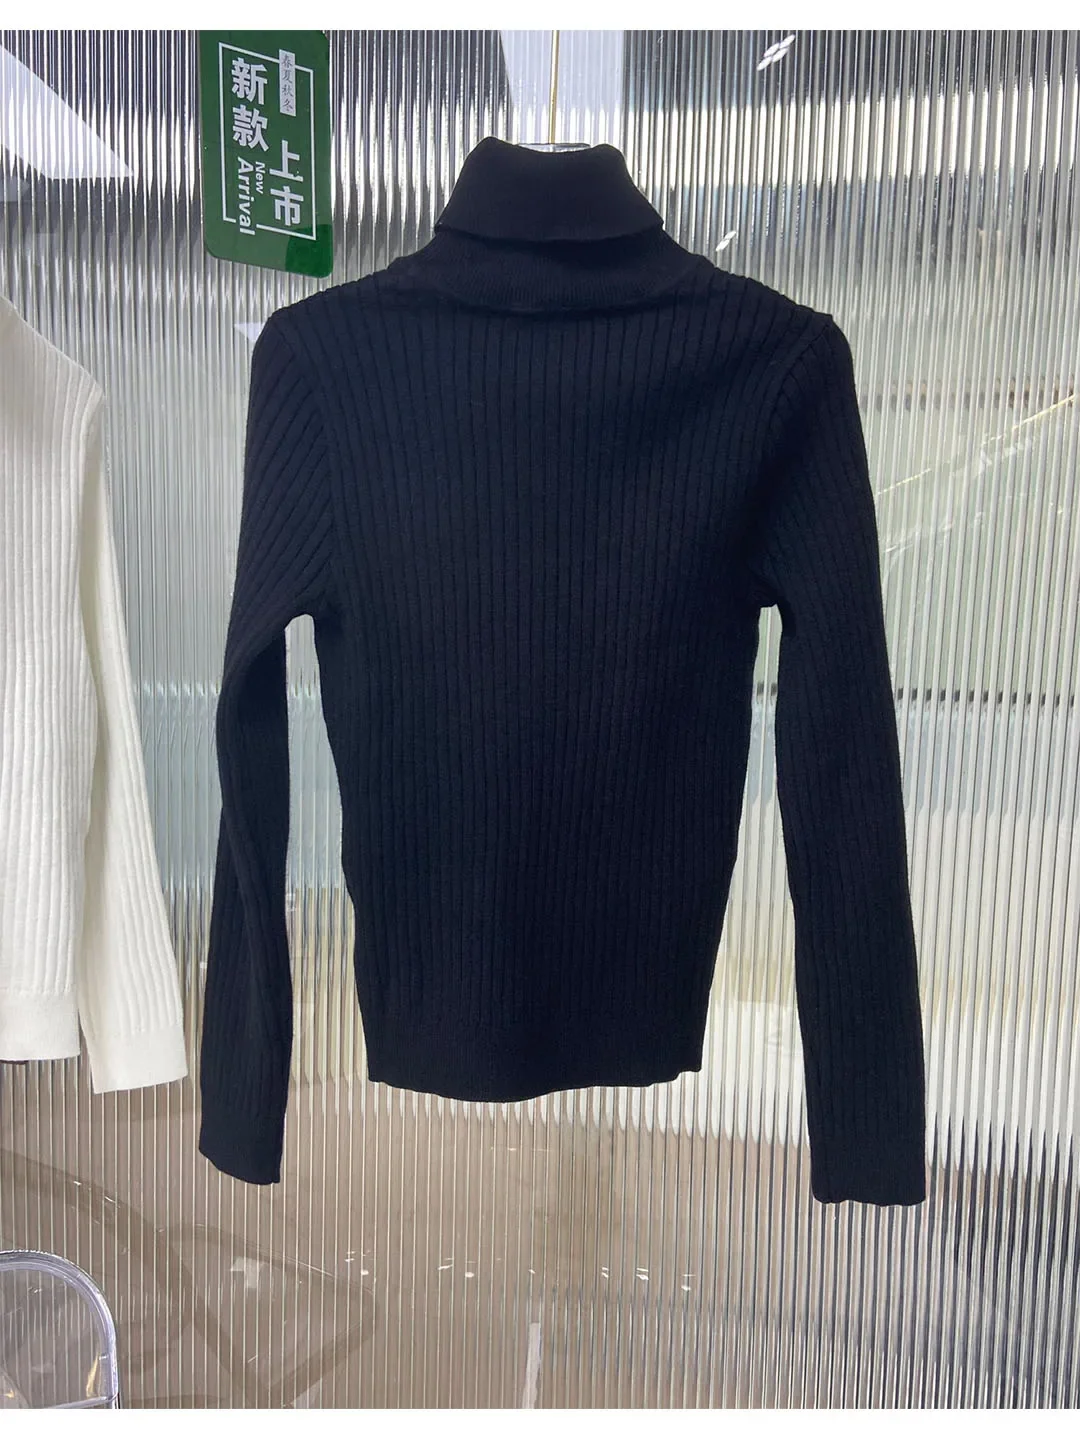 Ruduo/Žiema Nauji aukštos apykaklės 3D žakardo modelio apatinio sluoksnio marškiniai su universaliomis ir universaliomis apatinio sluoksnio detalėmis, skirtomis 